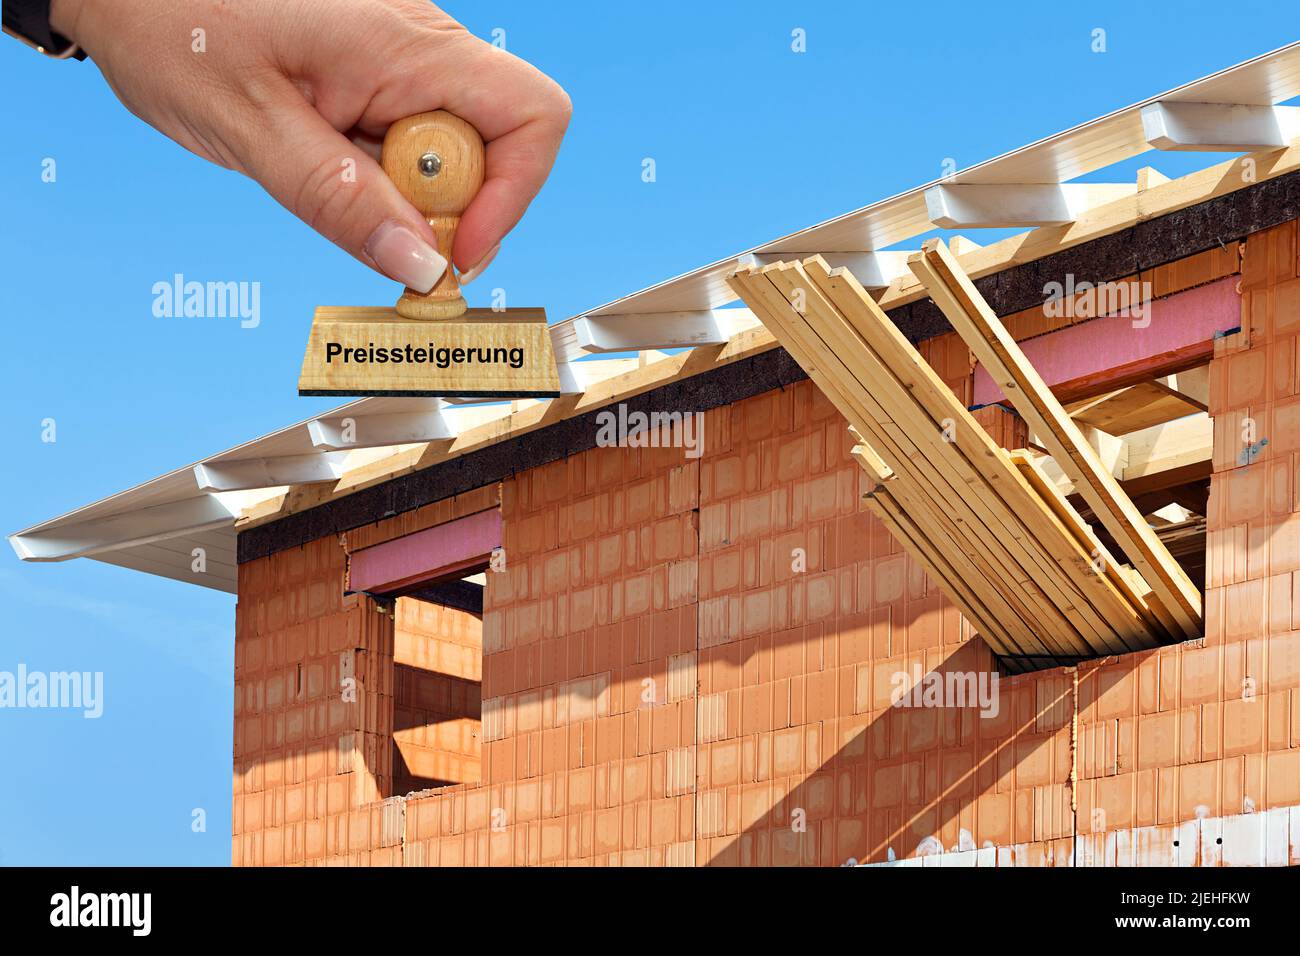 Rohbau auf einer Baustelle, Einfamilienhaus, Dachstuhl, Teuerungsrate, Holzpreise, Baumaterial, Inflation, teurer Hausbau, Einfamilienhaus, Preissteig Stock Photo